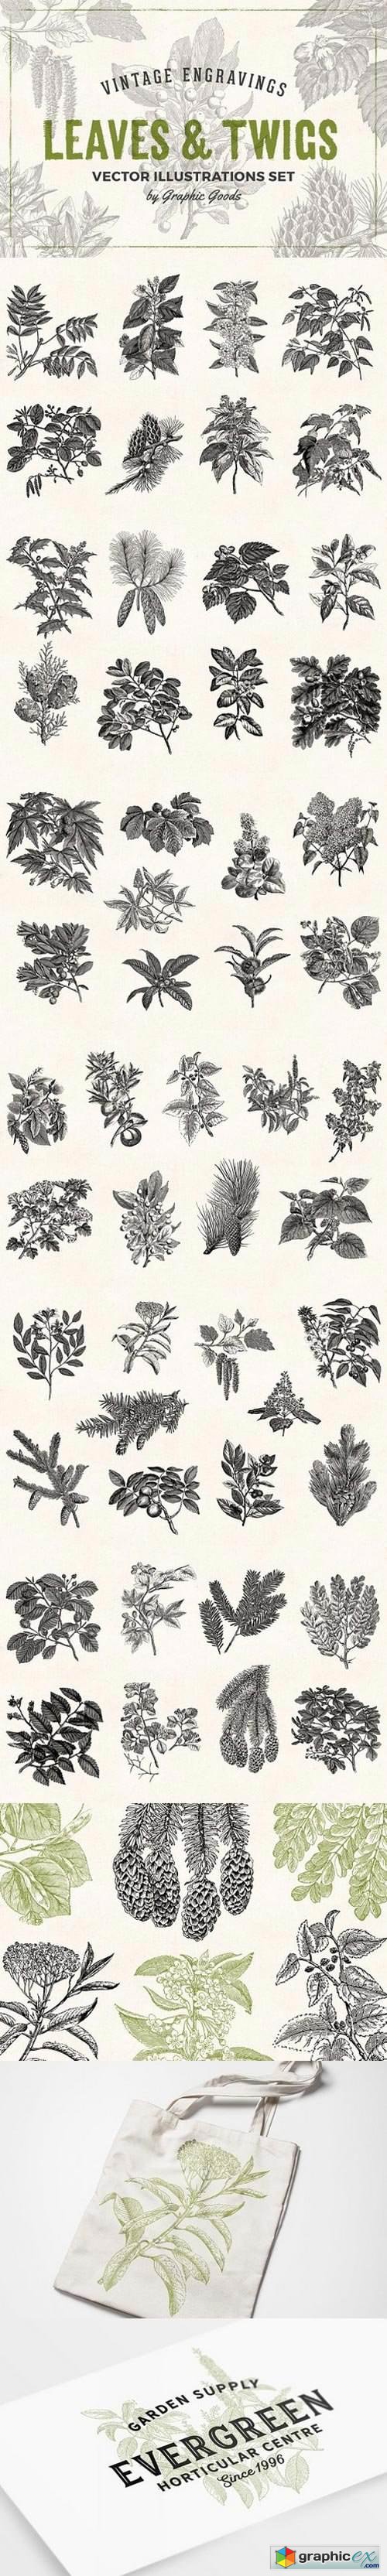 Leaves & Twigs Vintage Illustrations